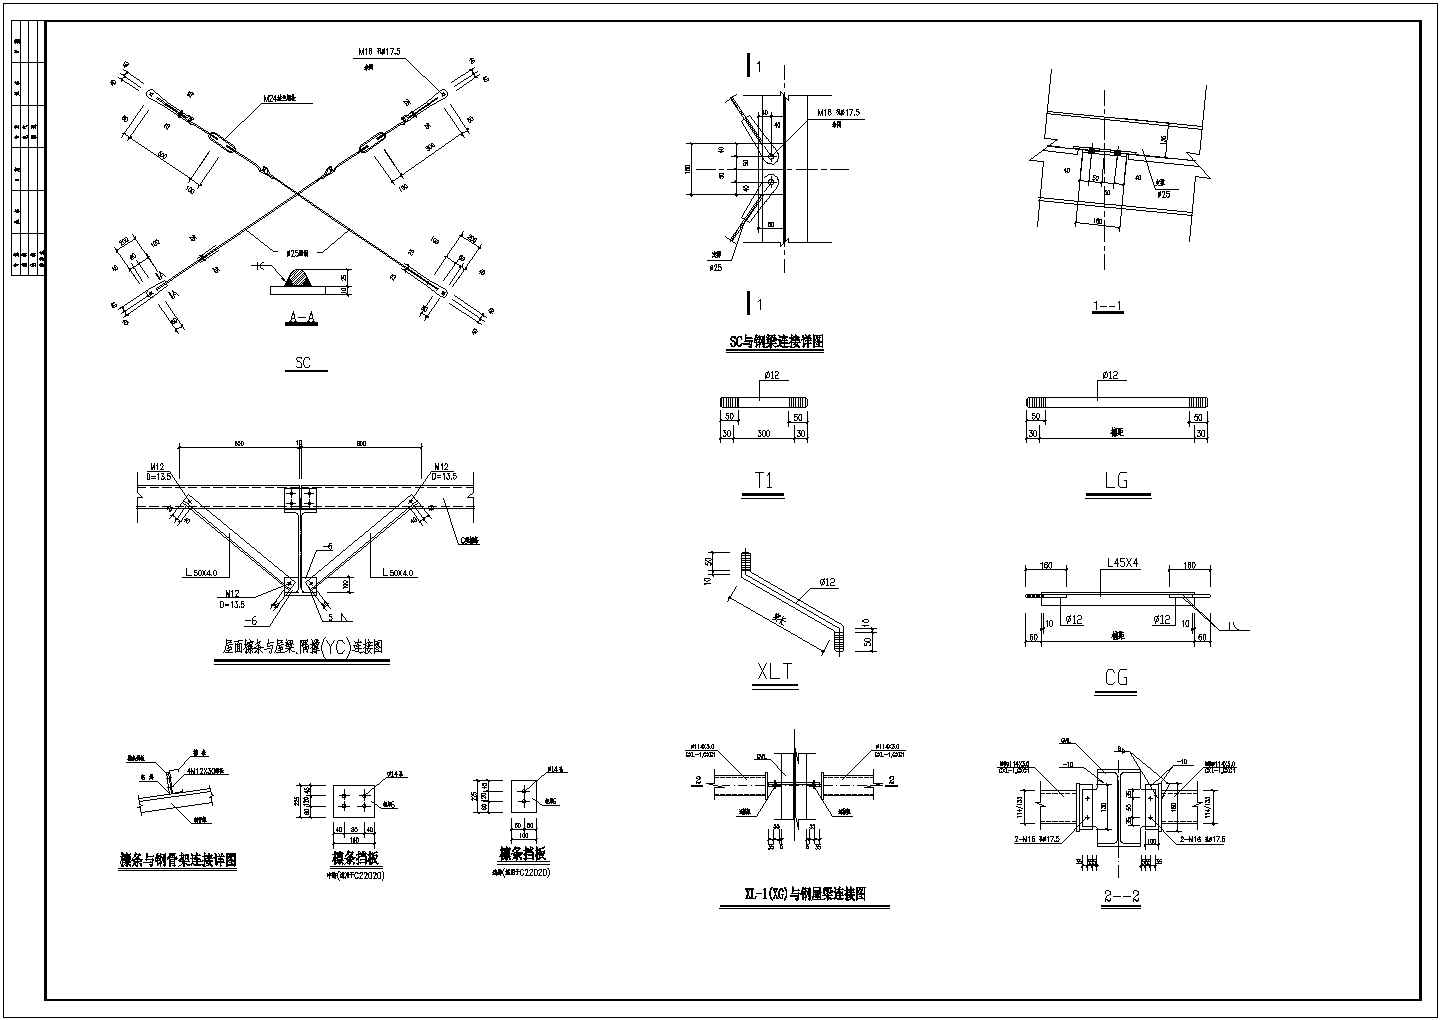  某钢结构厂房钢架构造CAD图